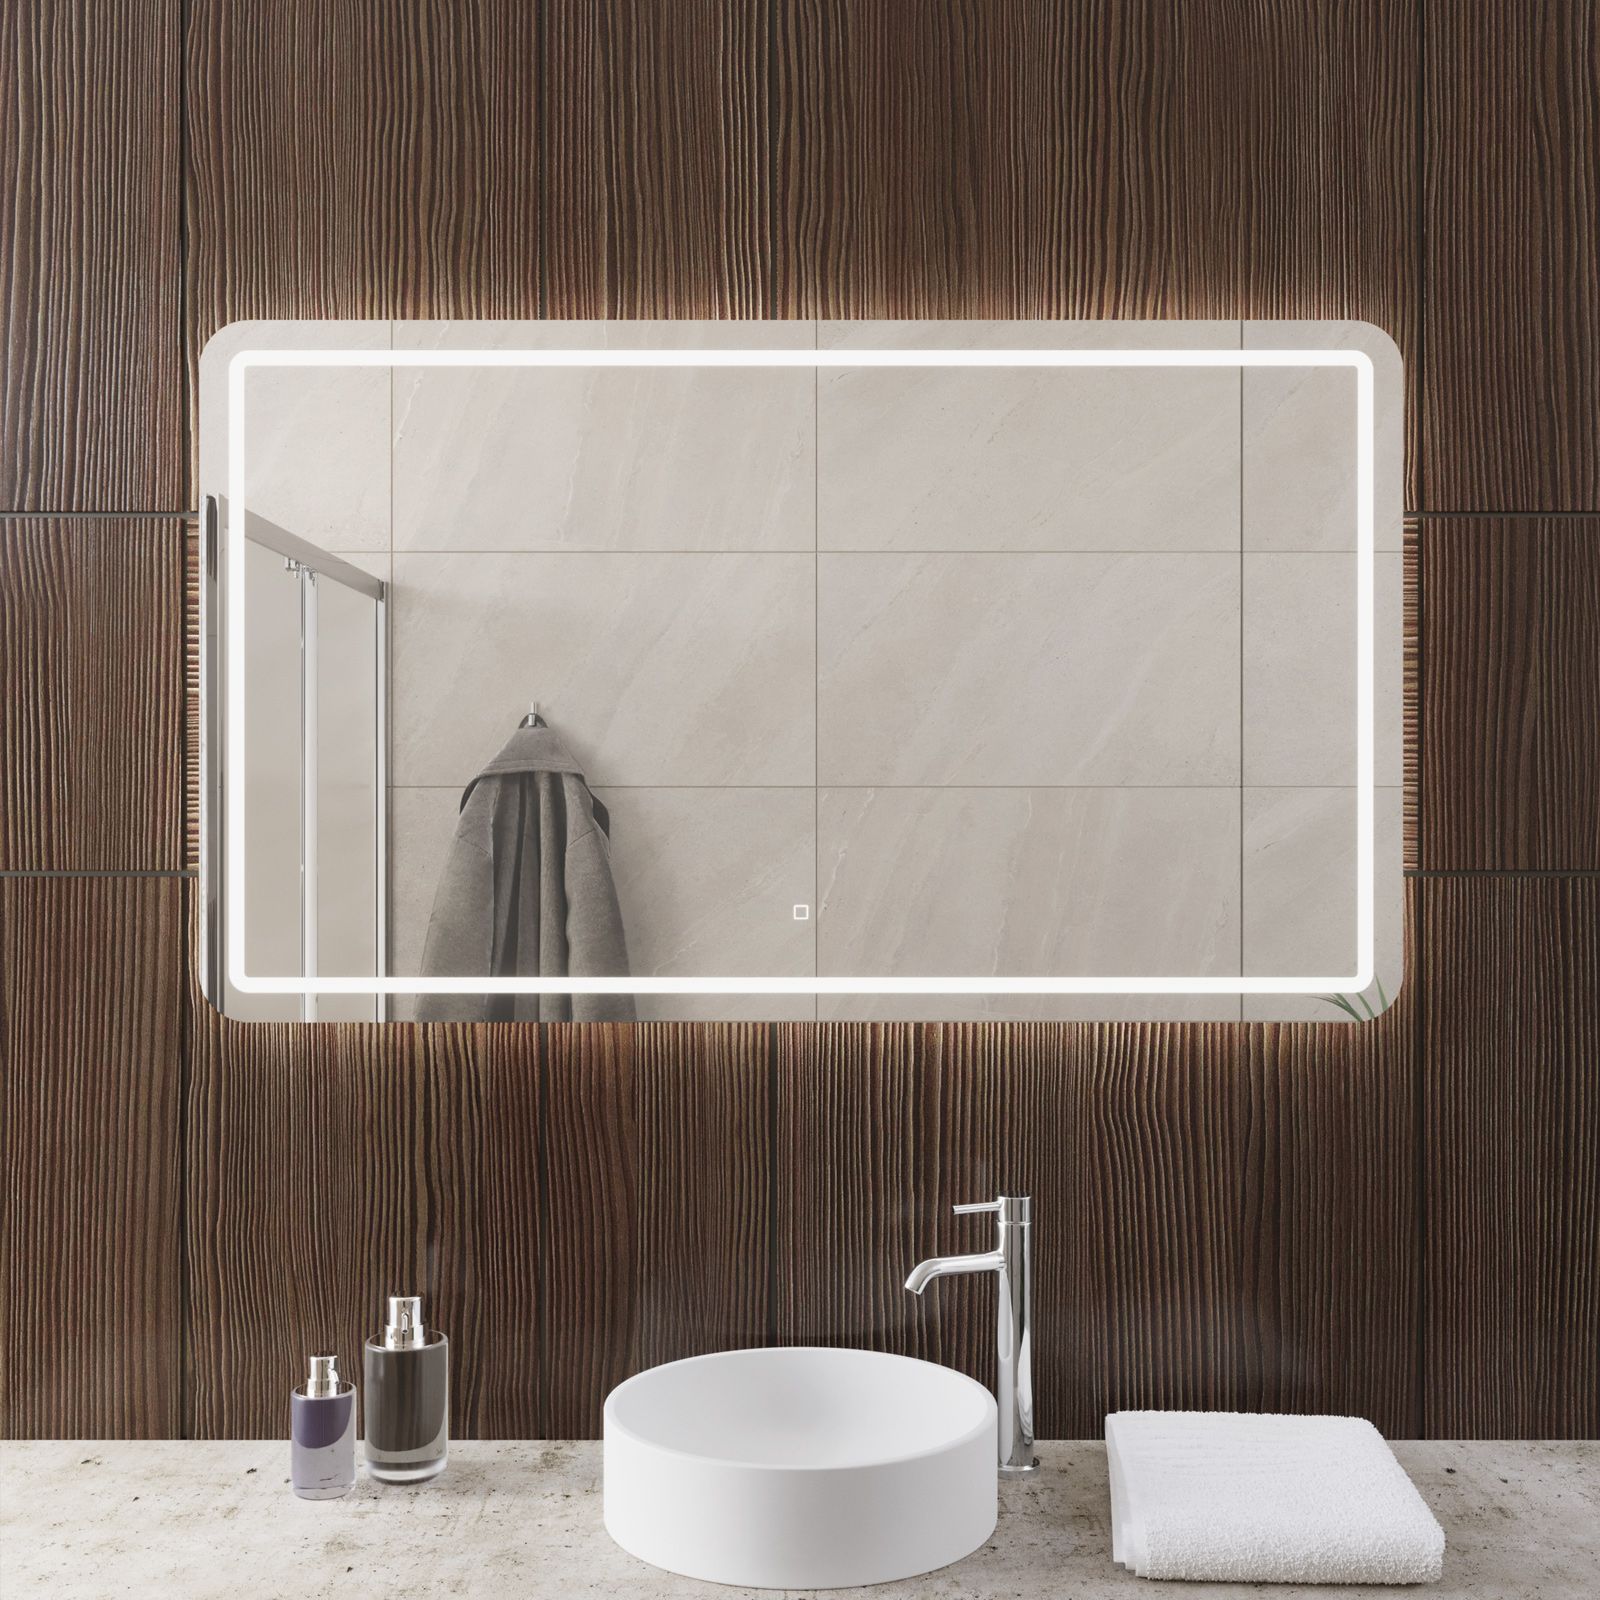 Specchio led bagno 120x70 cm con sensore touch rettangolare stondato - Blunt